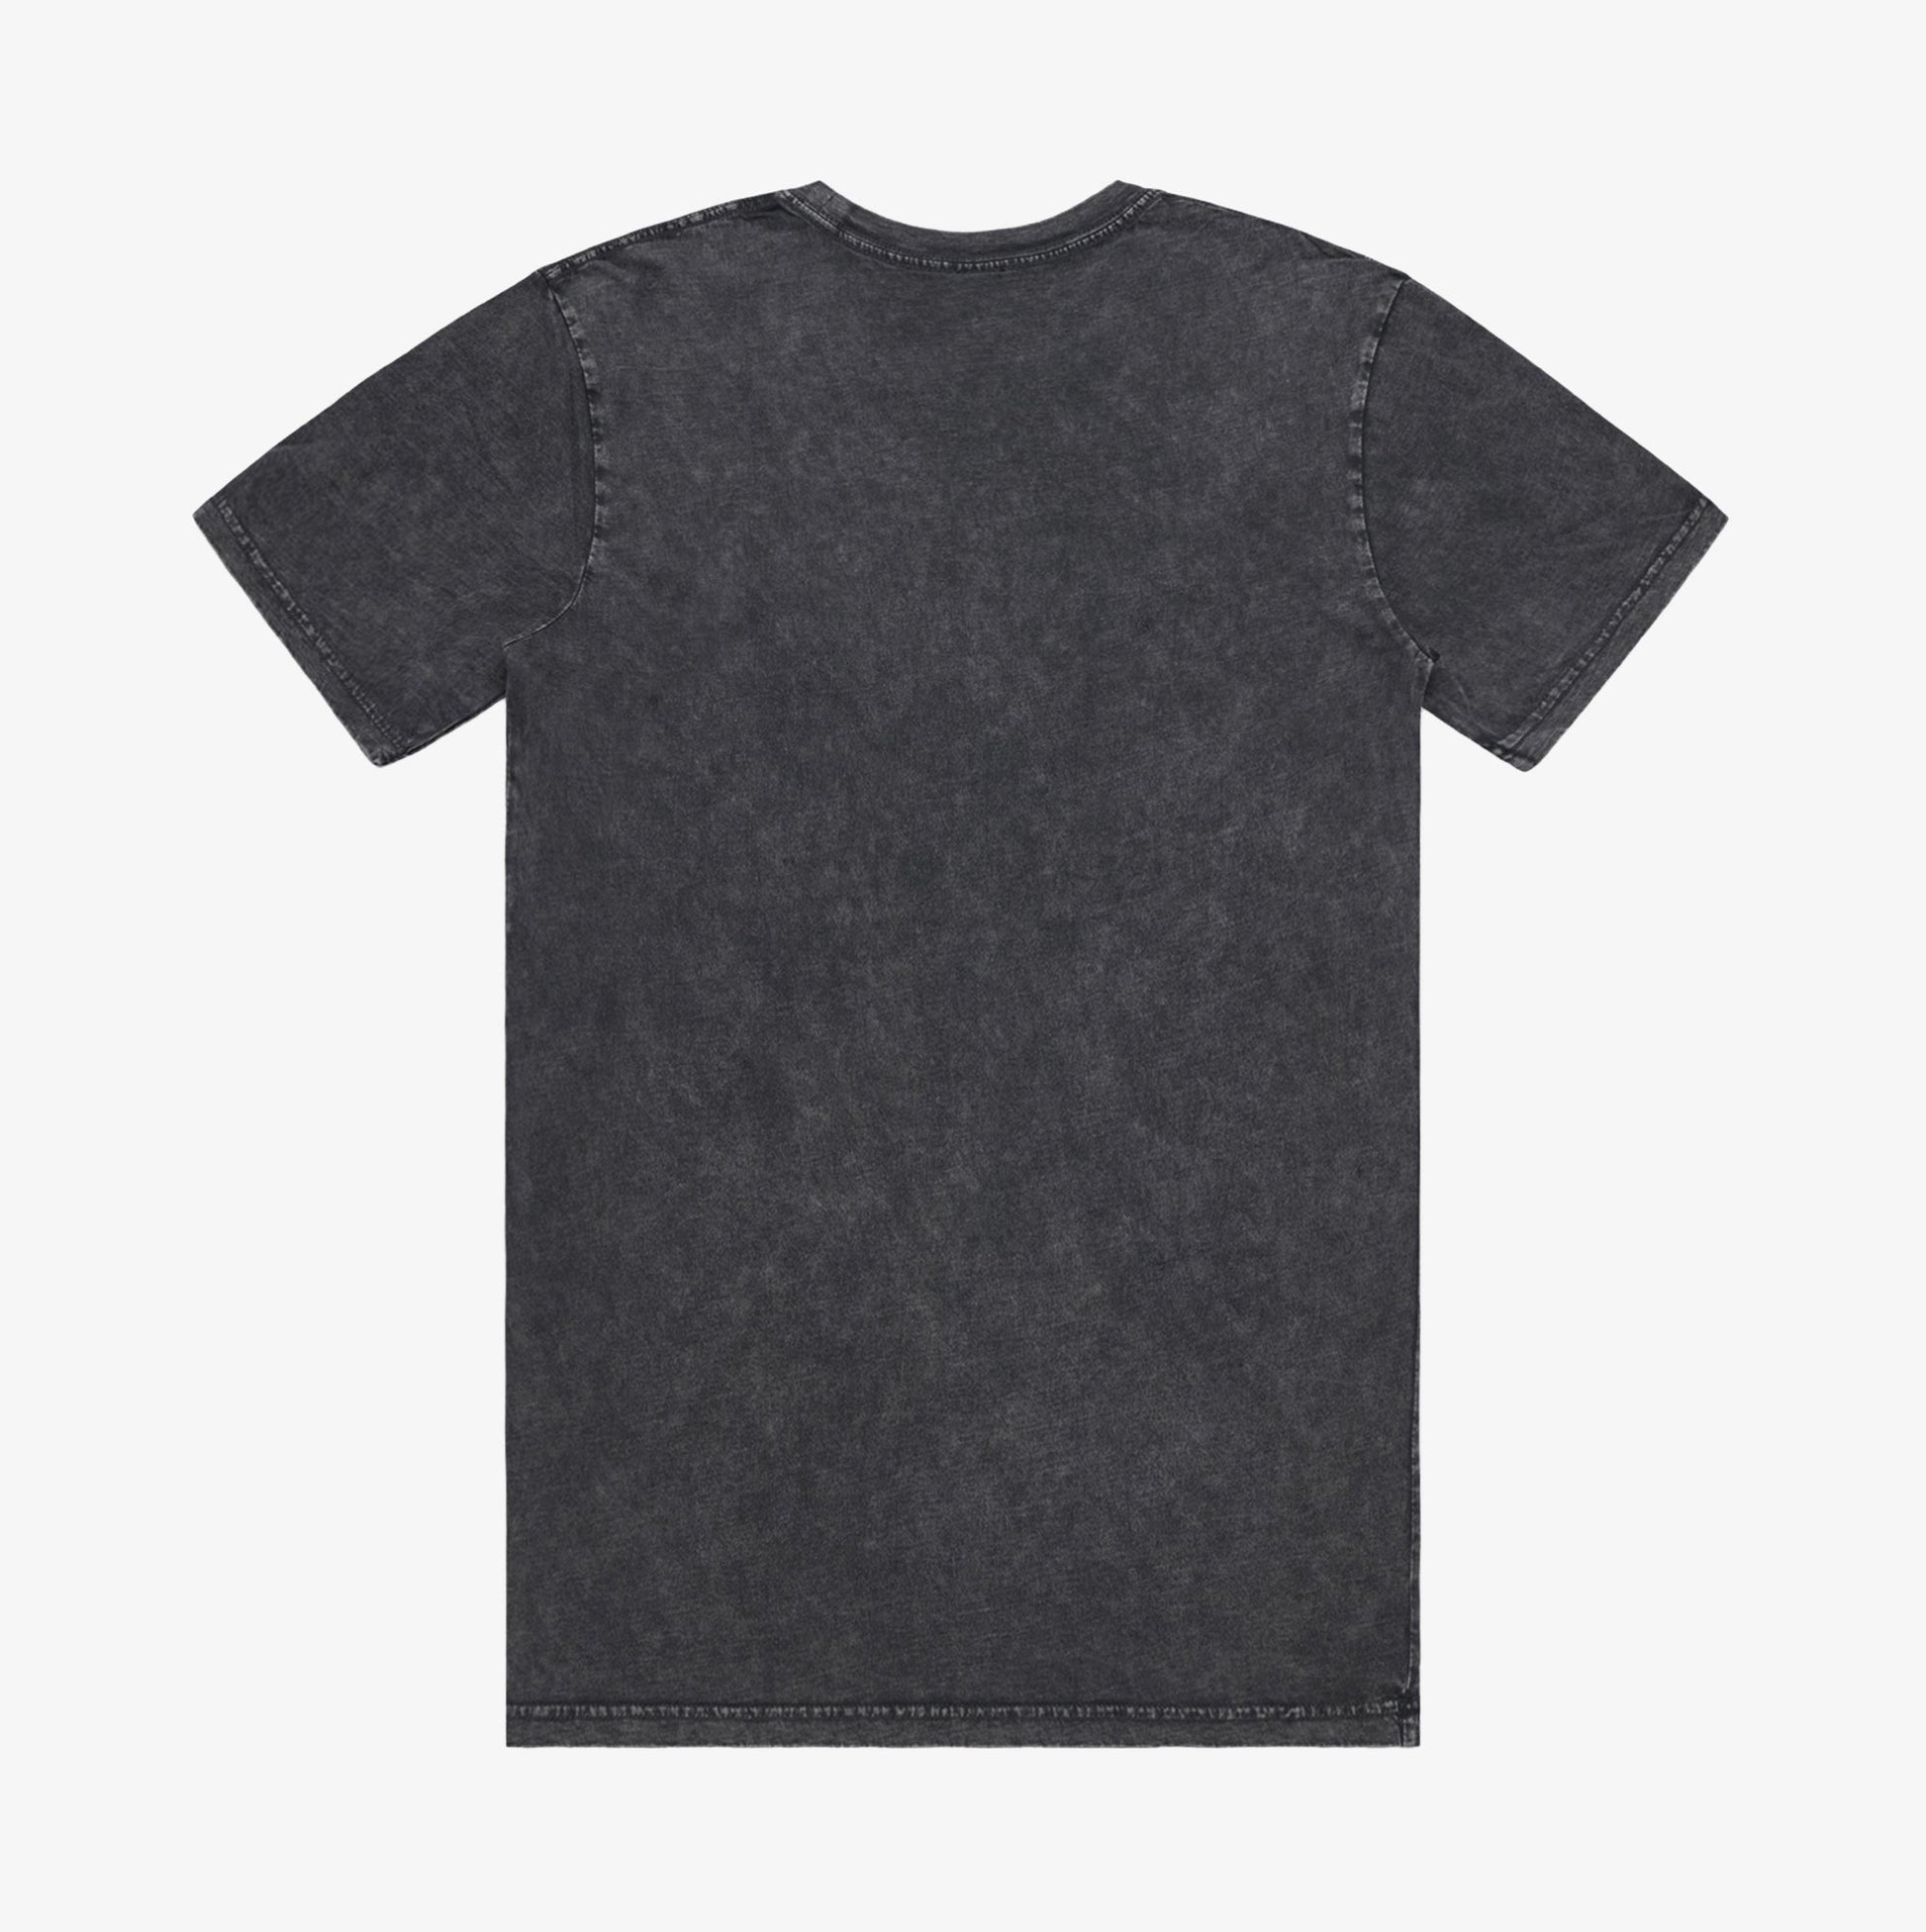 Stamos Bien's new premium, 100% cotton, unisex , Mineral Wash light t-shirt.